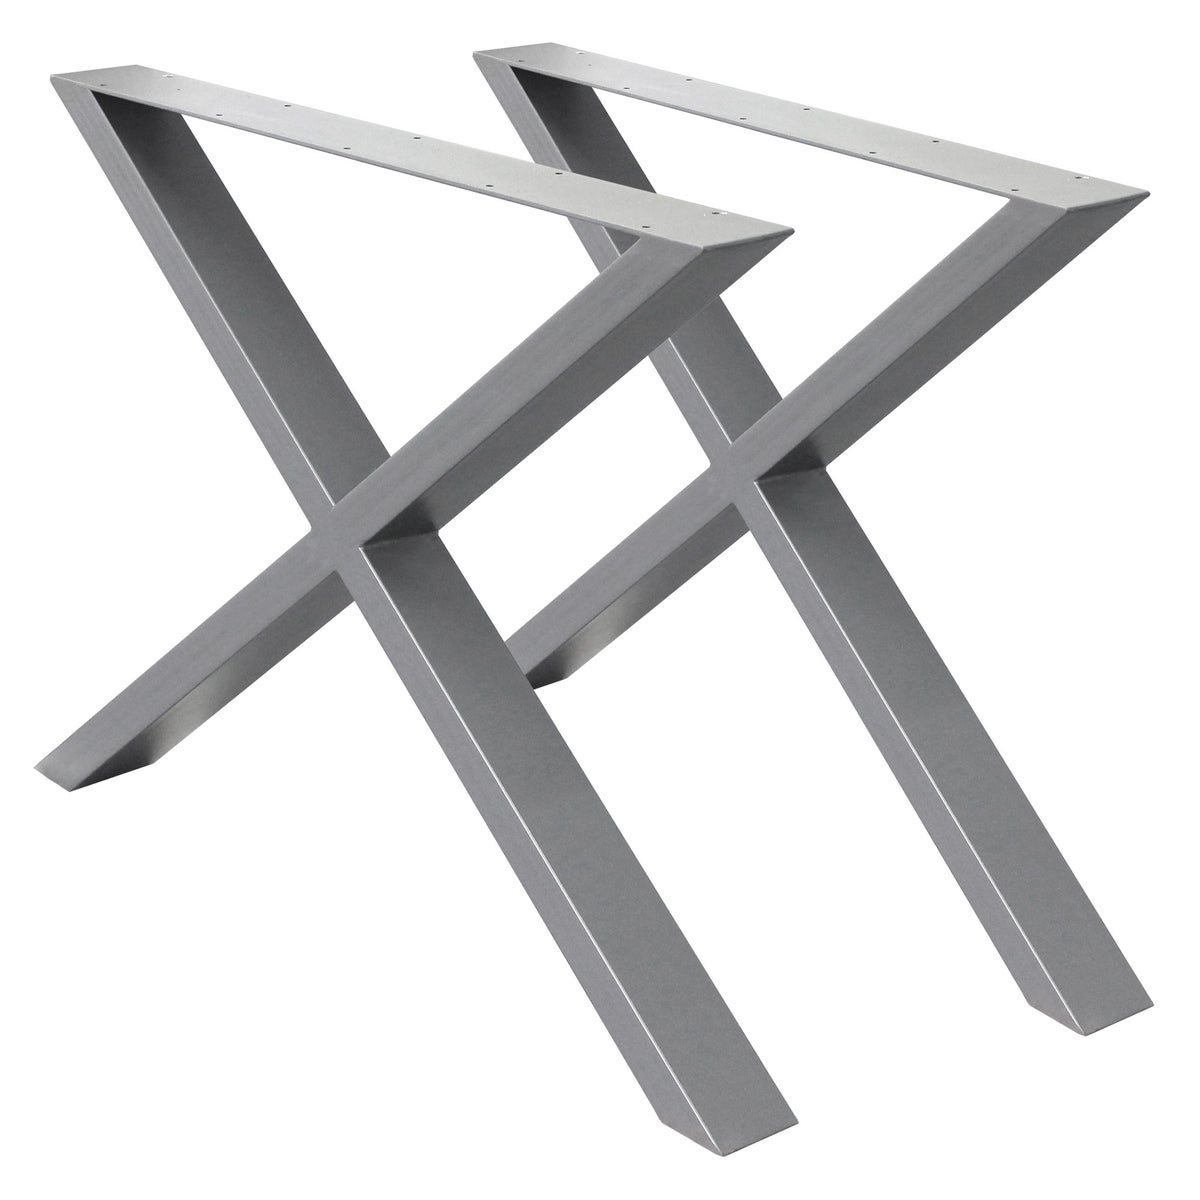 ECD Germany 2x Tischbeine X-Design X-Form, 60 x 72 cm, Grau, pulverbeschichtete Stahl, Industriedesign, Metall Tischkufen Tischuntergestell Tischgestell Möbelfüße, für Esstisch Schreibtisch